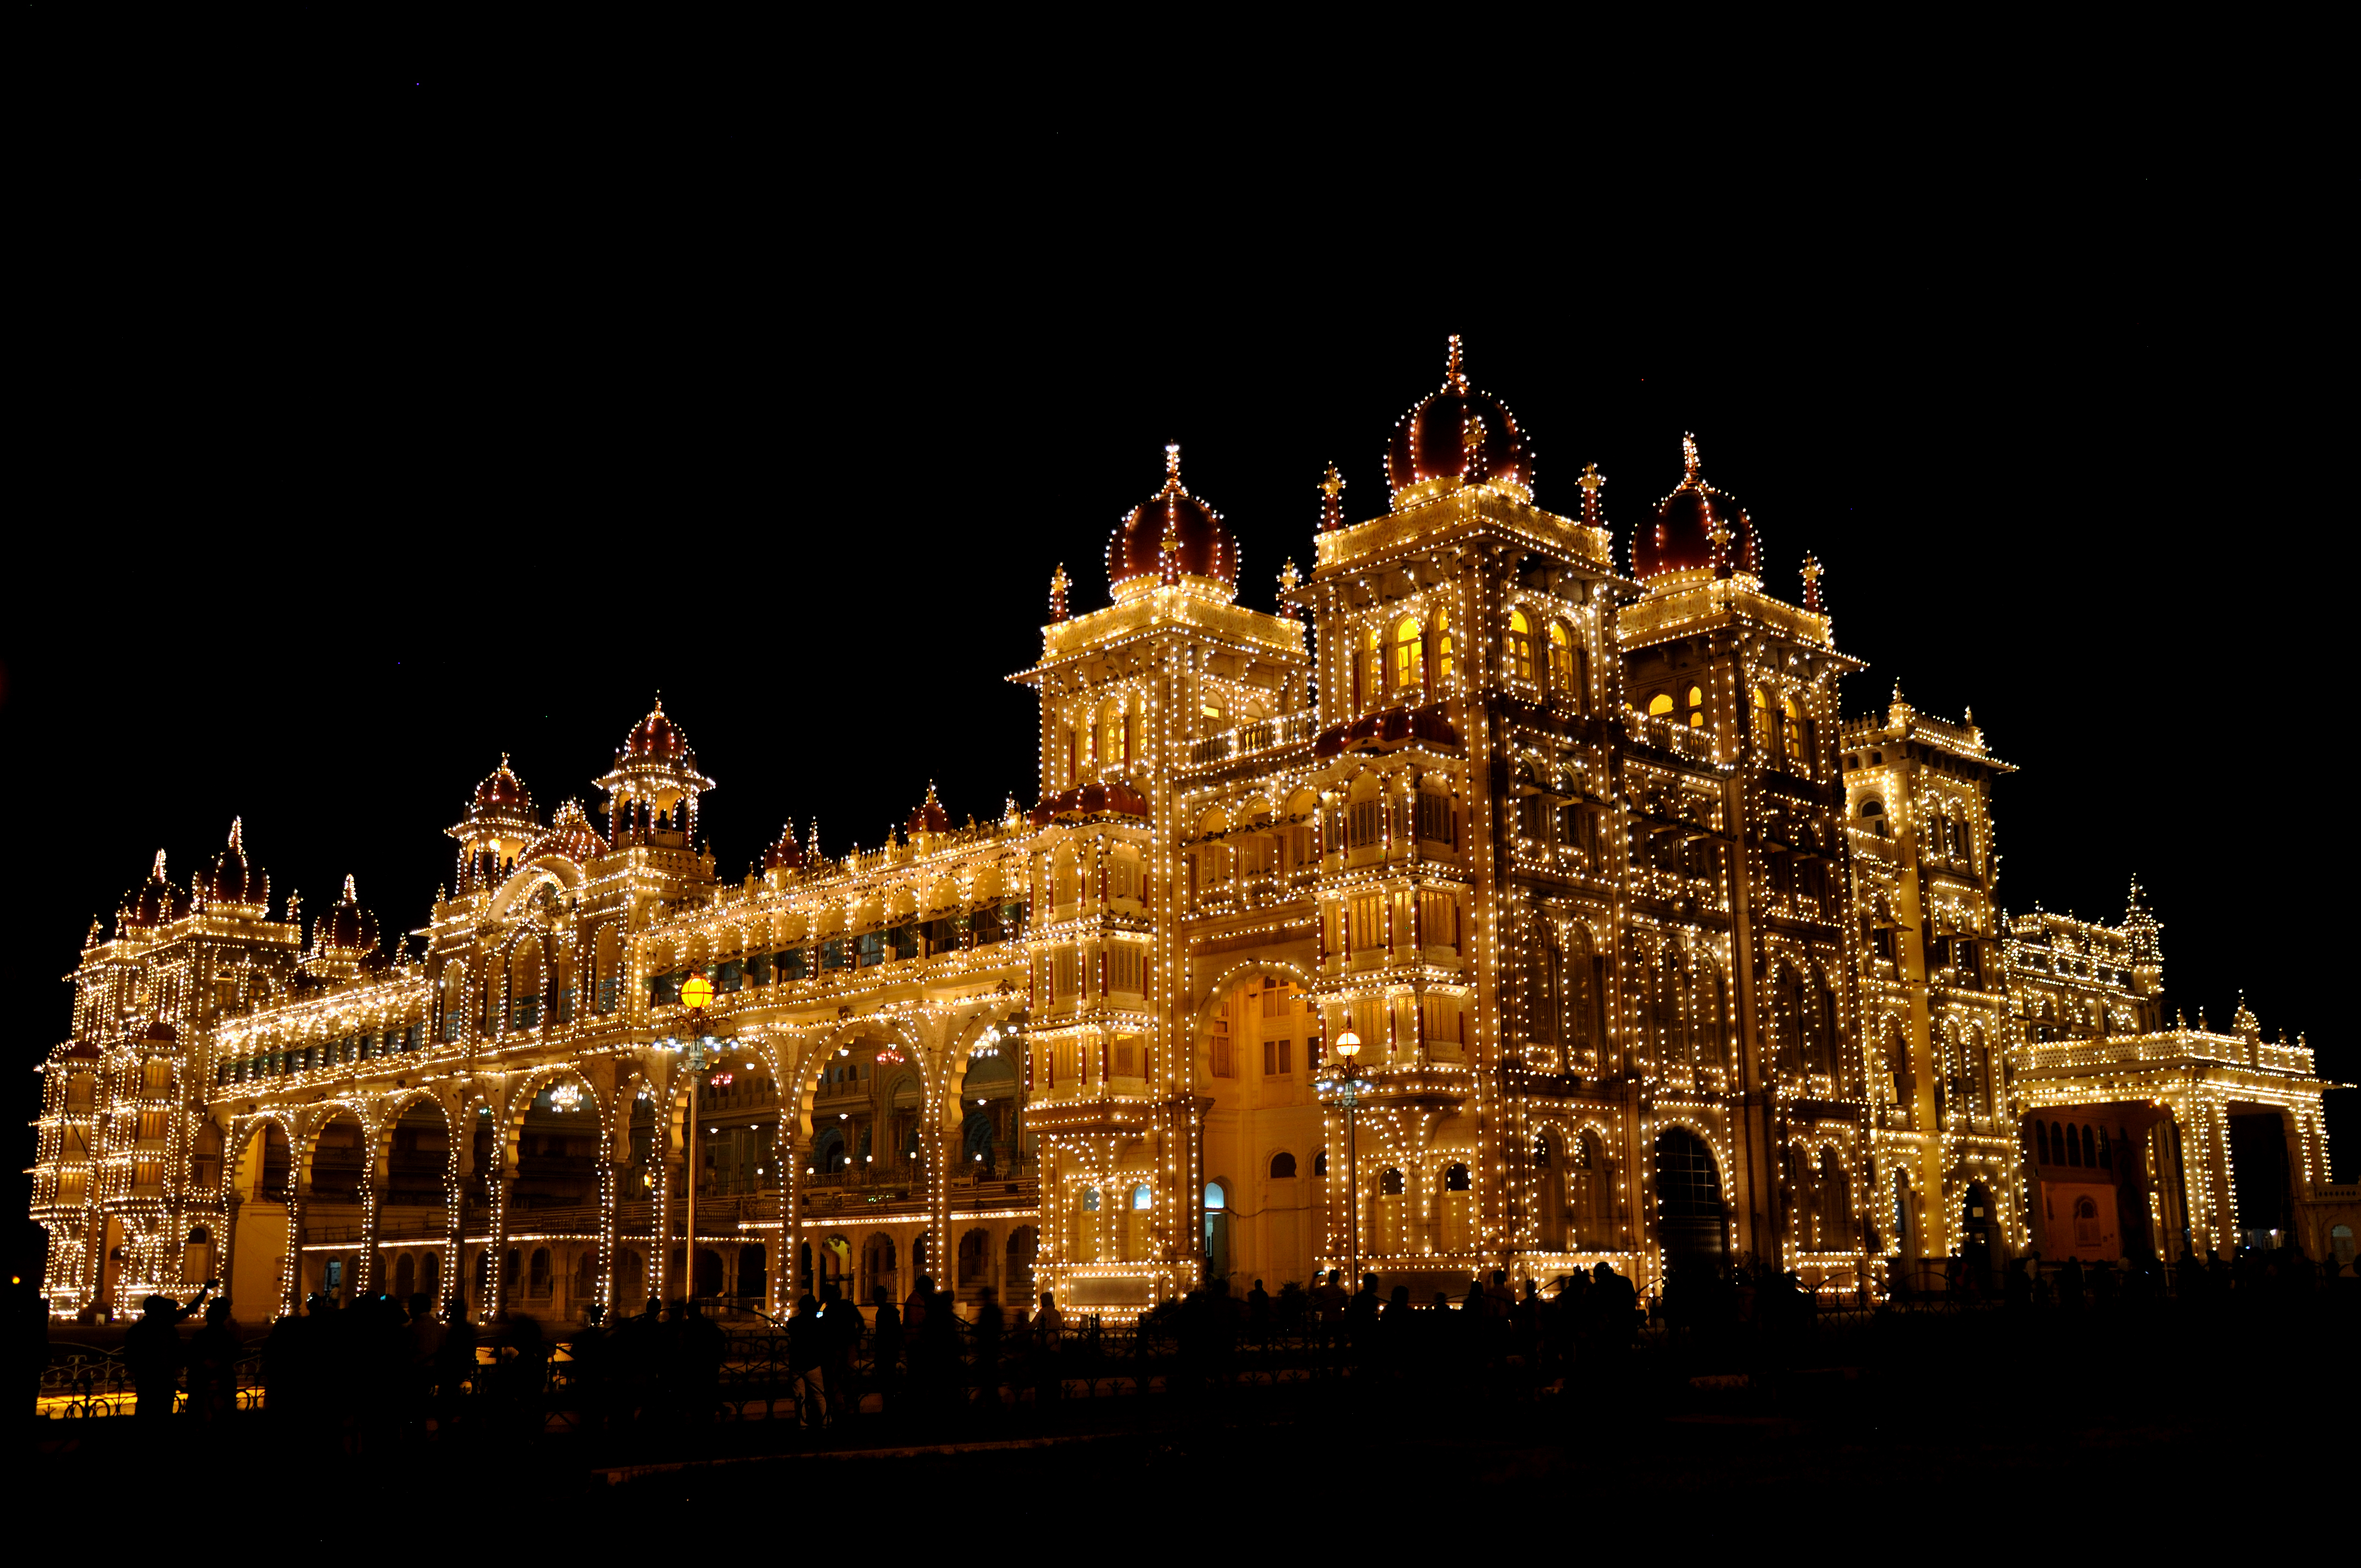 Mysore Palace 4k Ultra HD Wallpaper | Background Image ...